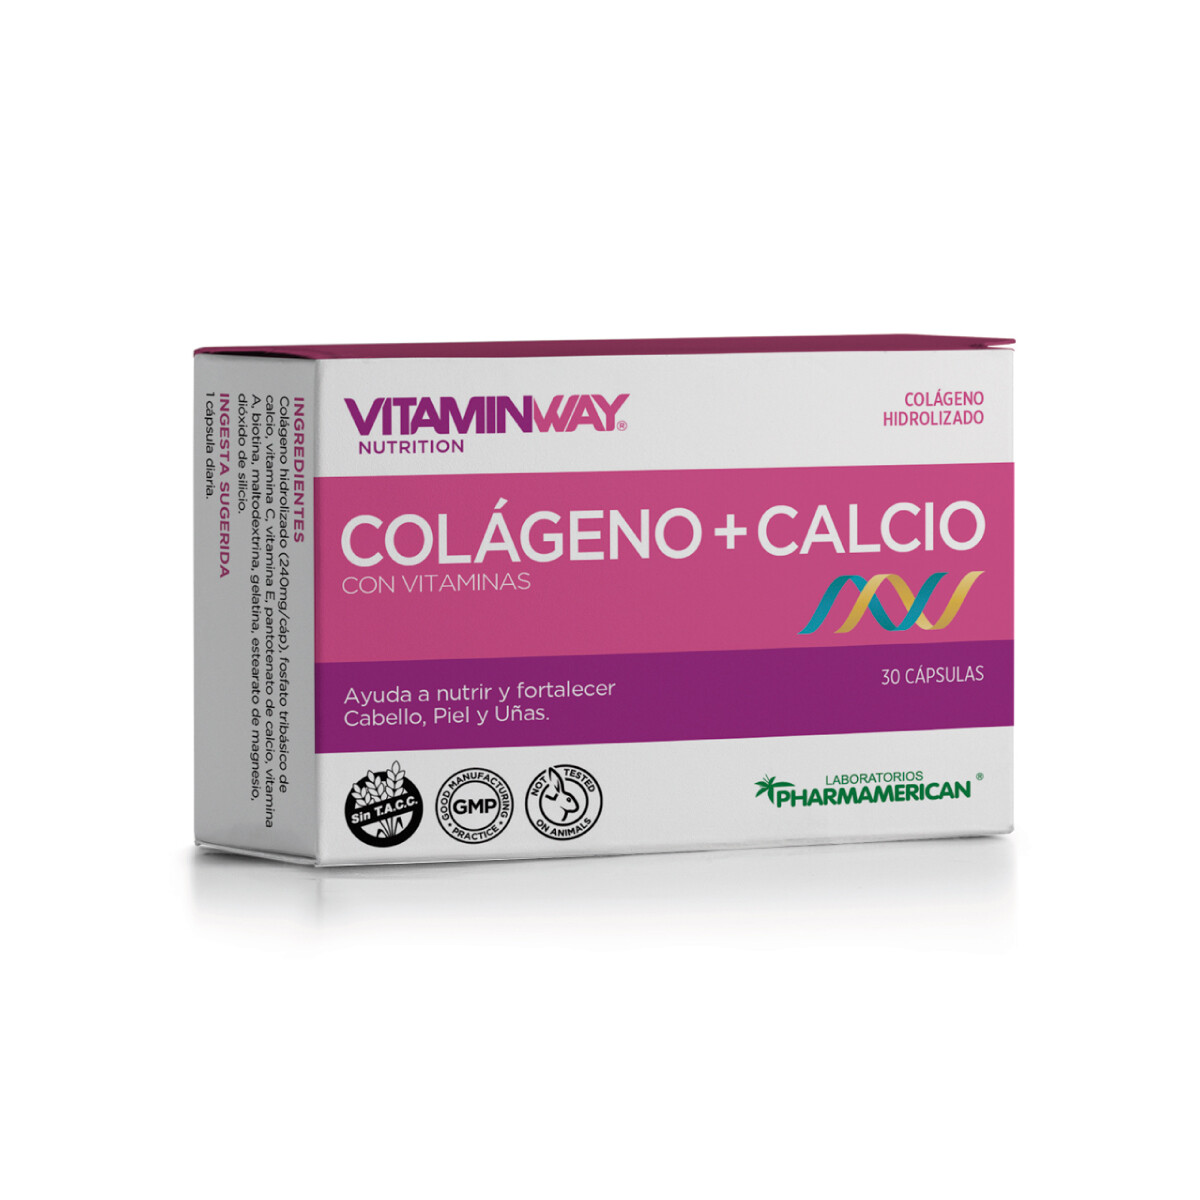 Vitaminway Colágeno + Calcio 30 caps 